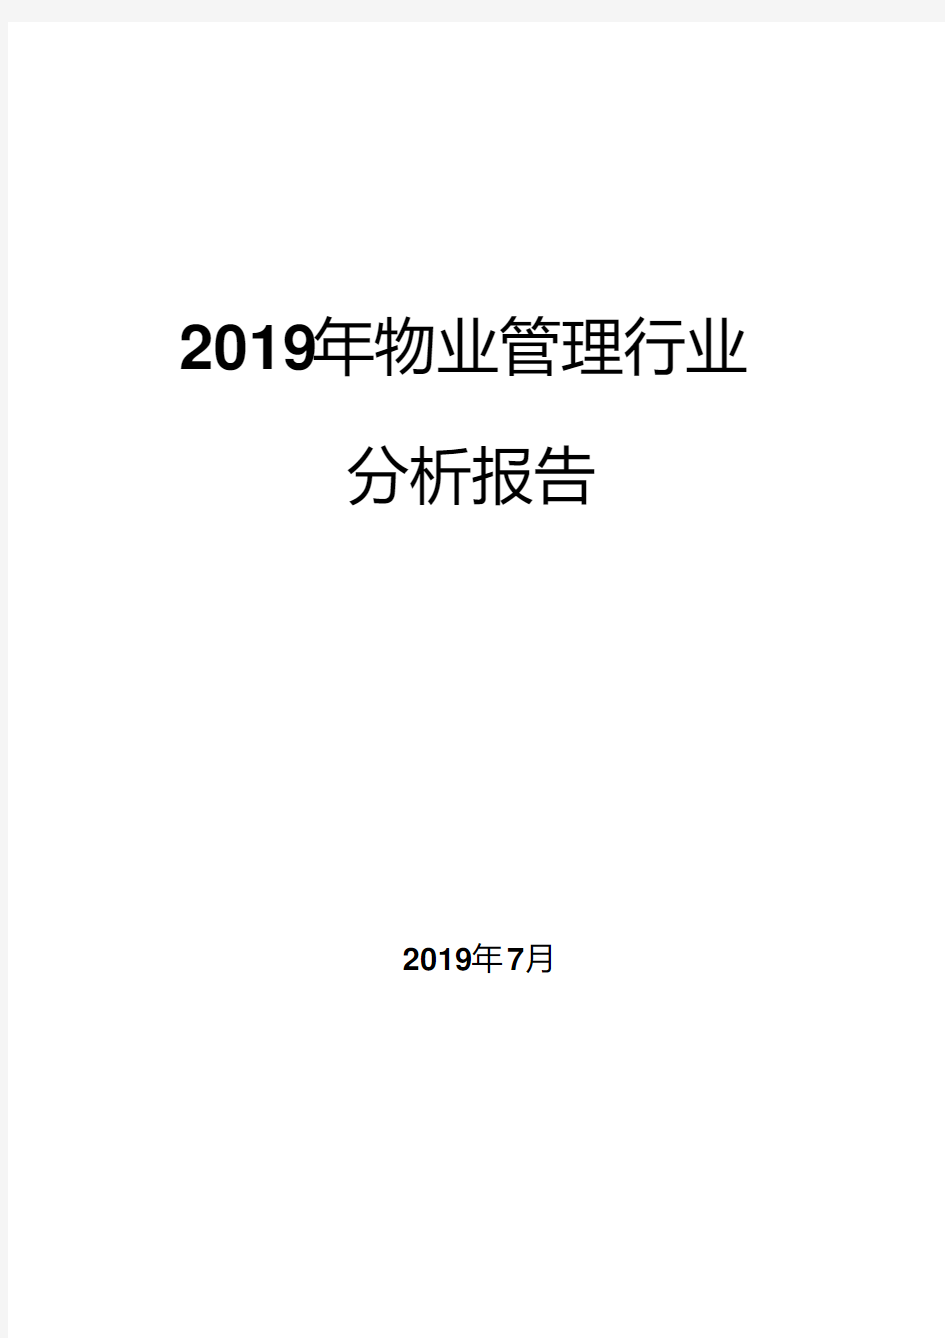 2019年物业管理行业分析报告